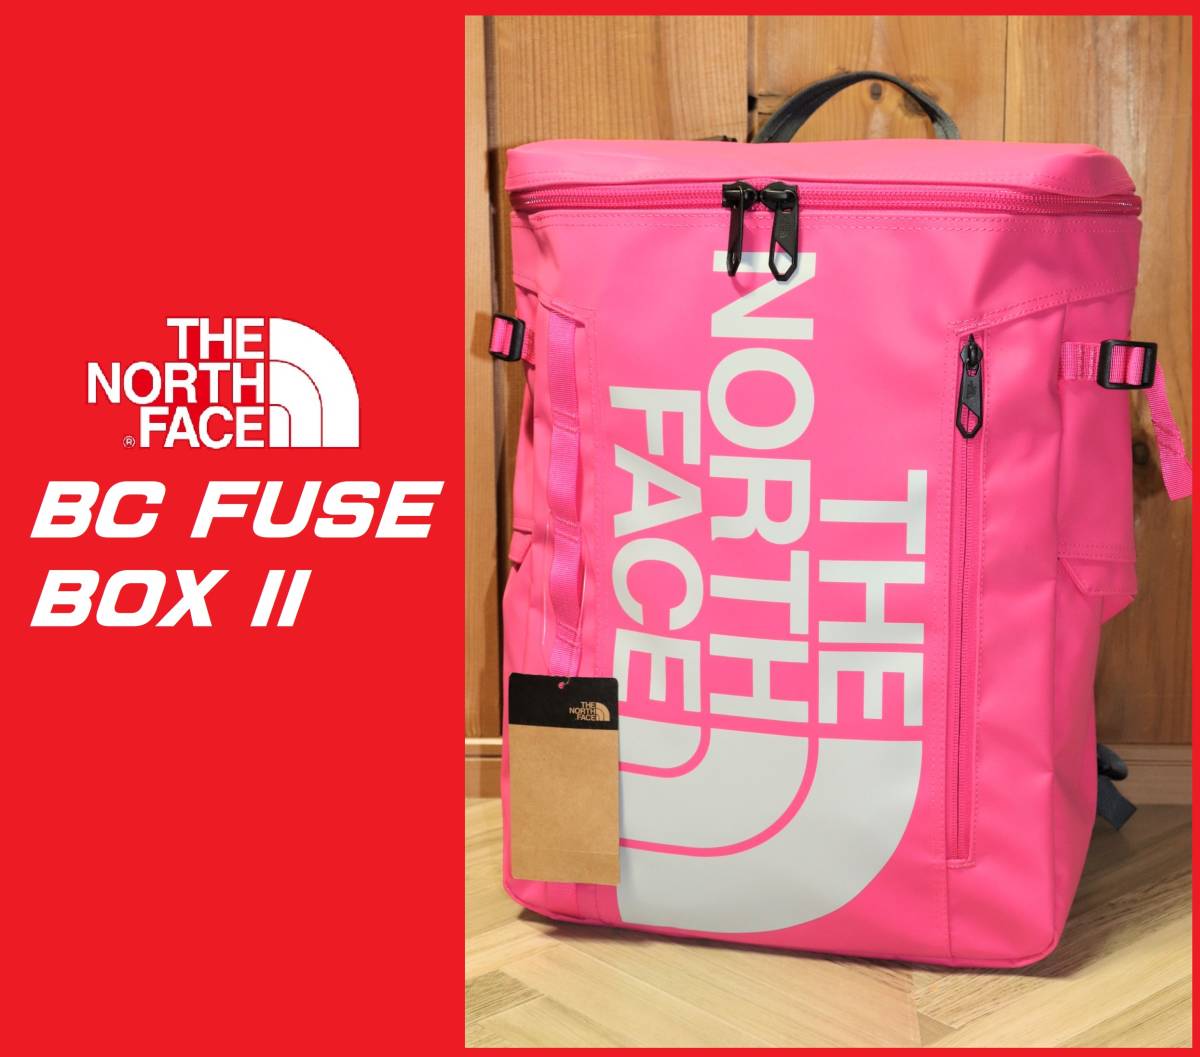 即決 THE NORTH FACE BC Fuse Box Ⅱ 30L ノースフェイス BCヒューズボックス2 NM82000 ピンク  税込定価1万7600円 数量限定!特売